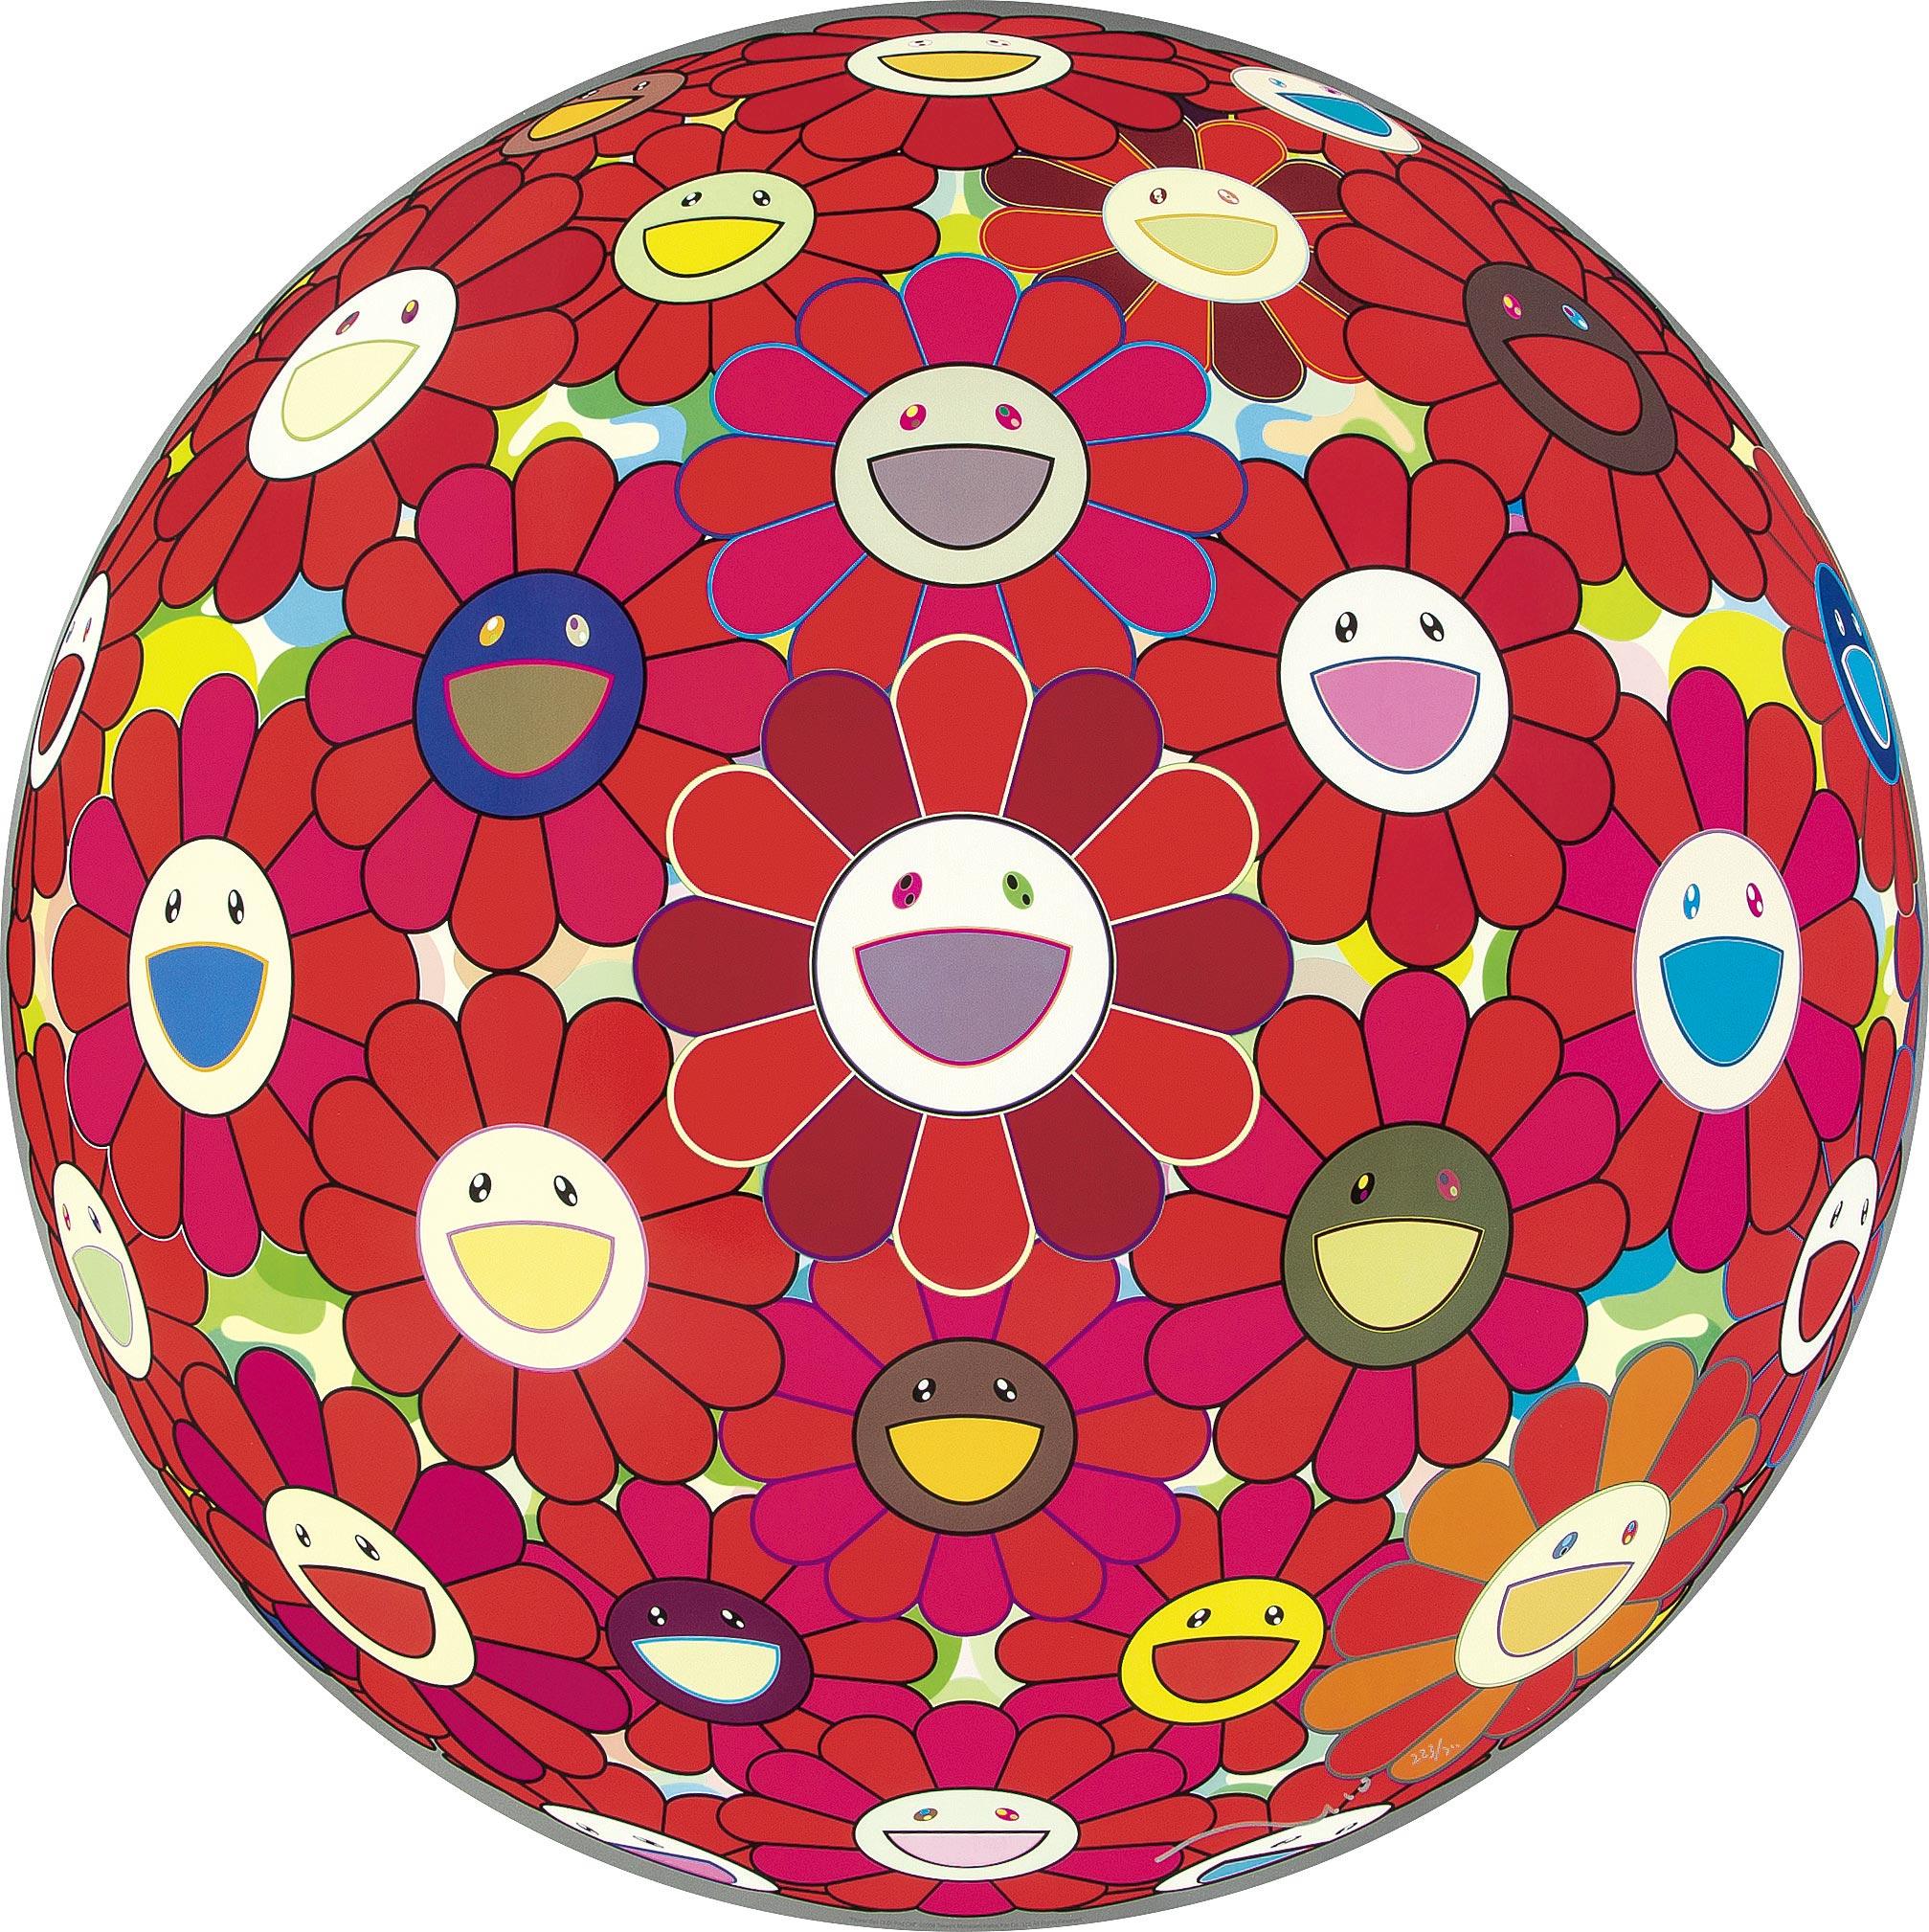 Takashi Murakami Figurative Print – Blumenball (3-D) Red Cliff Limitierte Auflage (Druck) von Murakami signiert, nummeriert